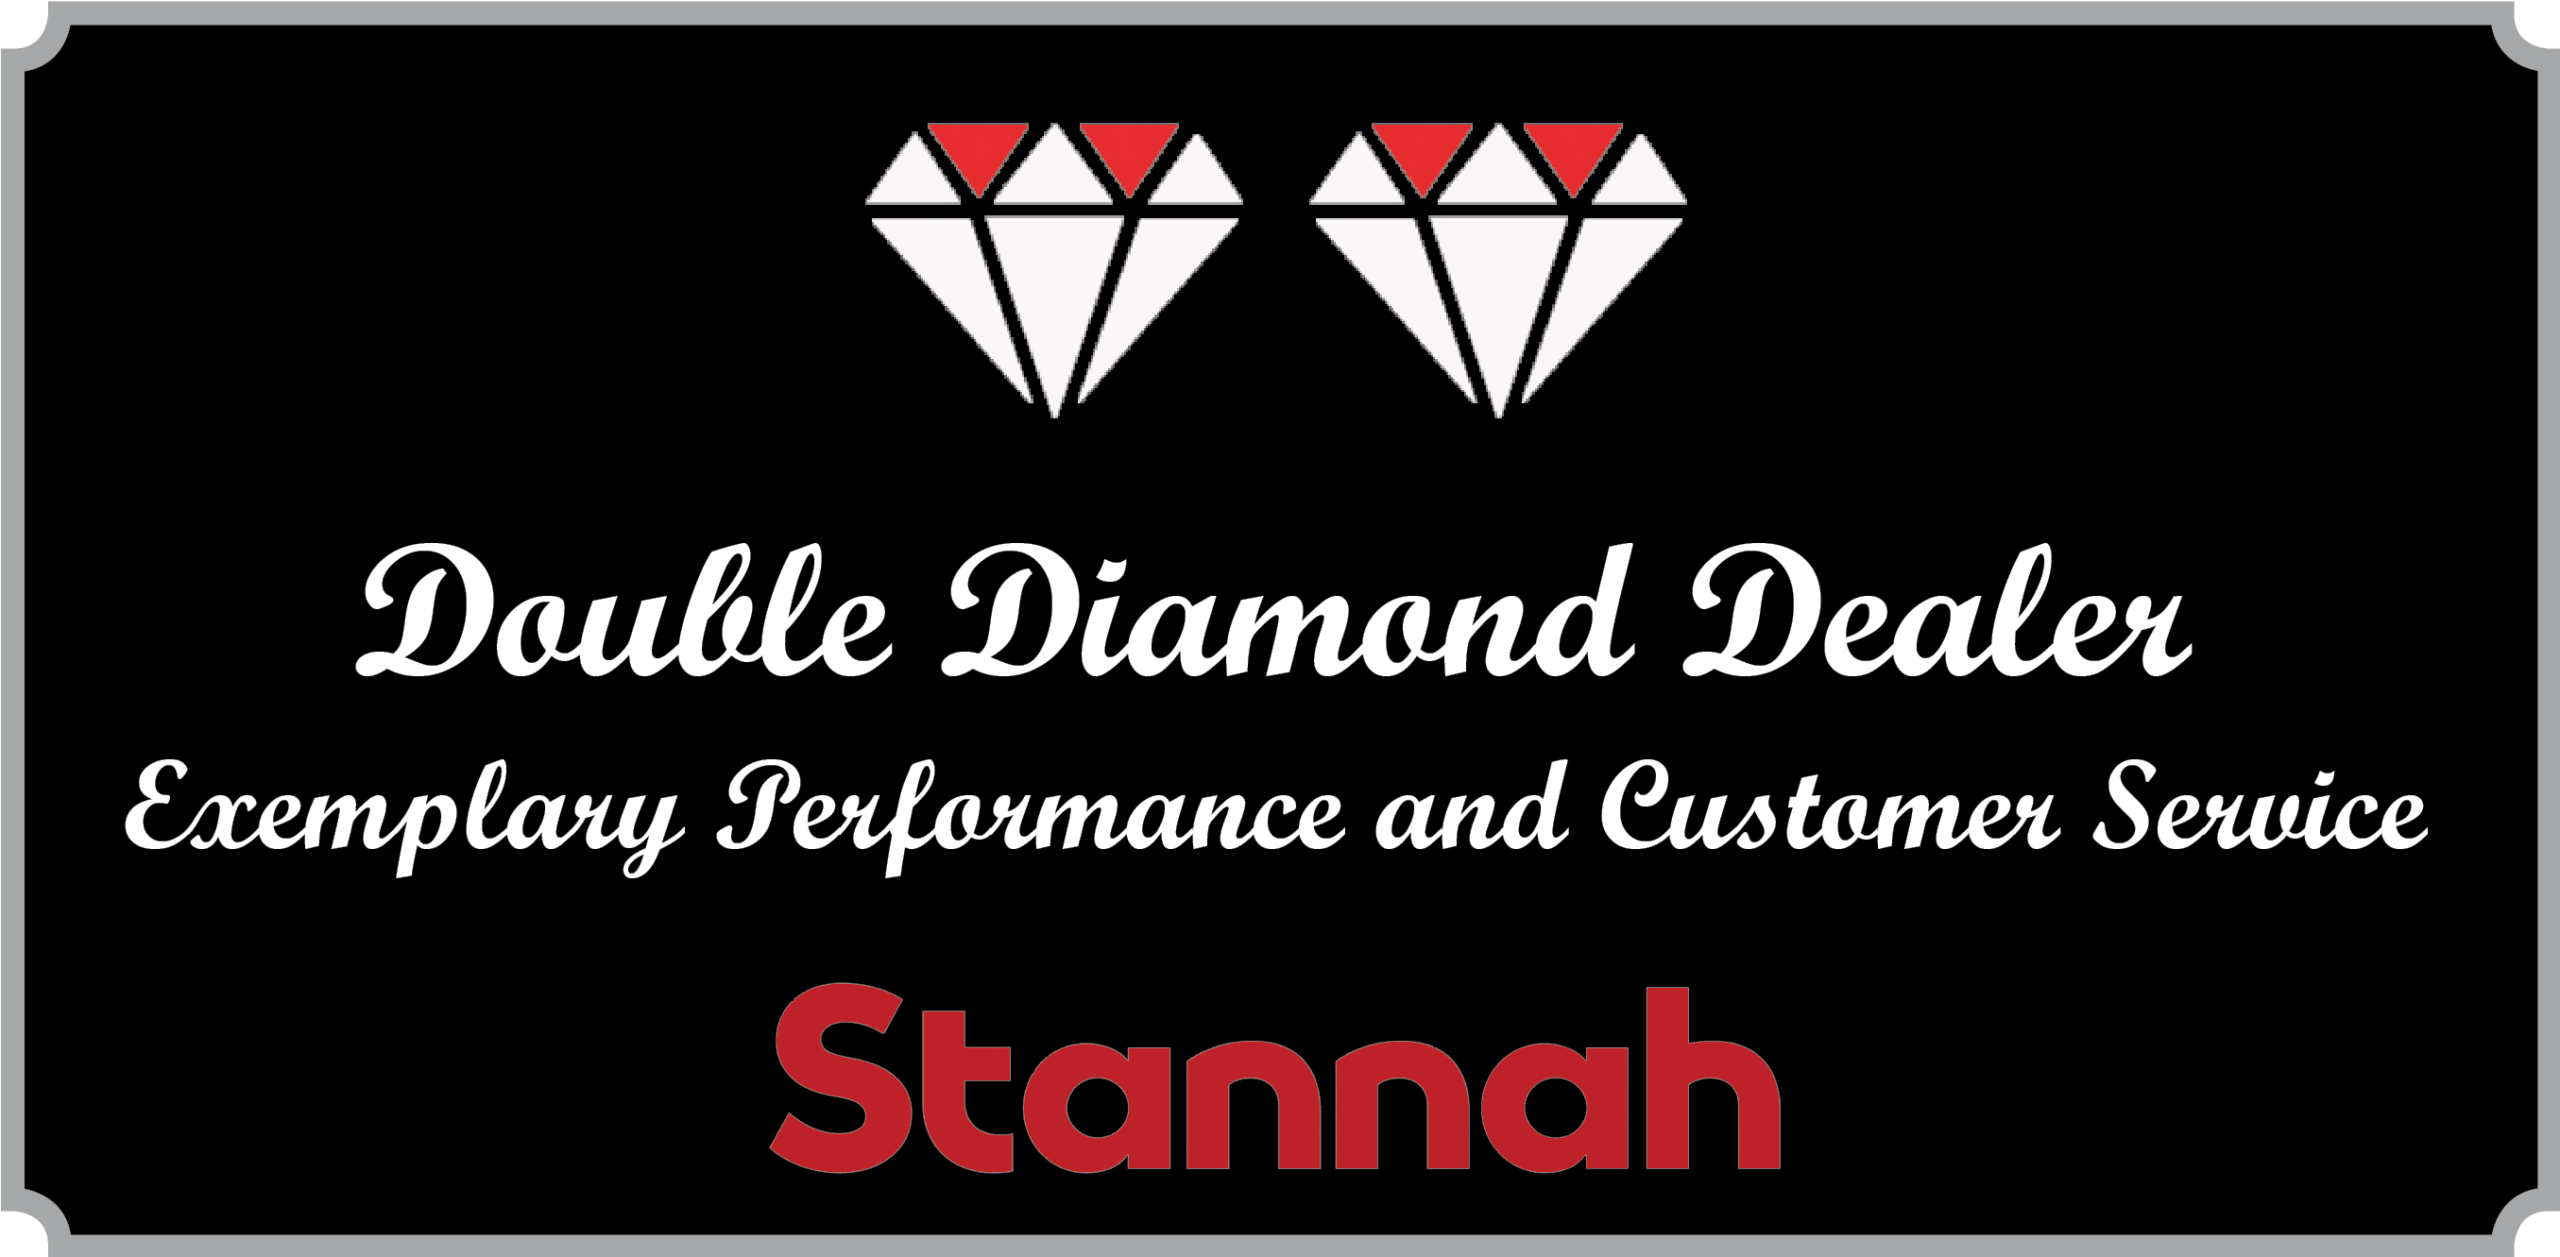 Double Diamond Award by Stannah